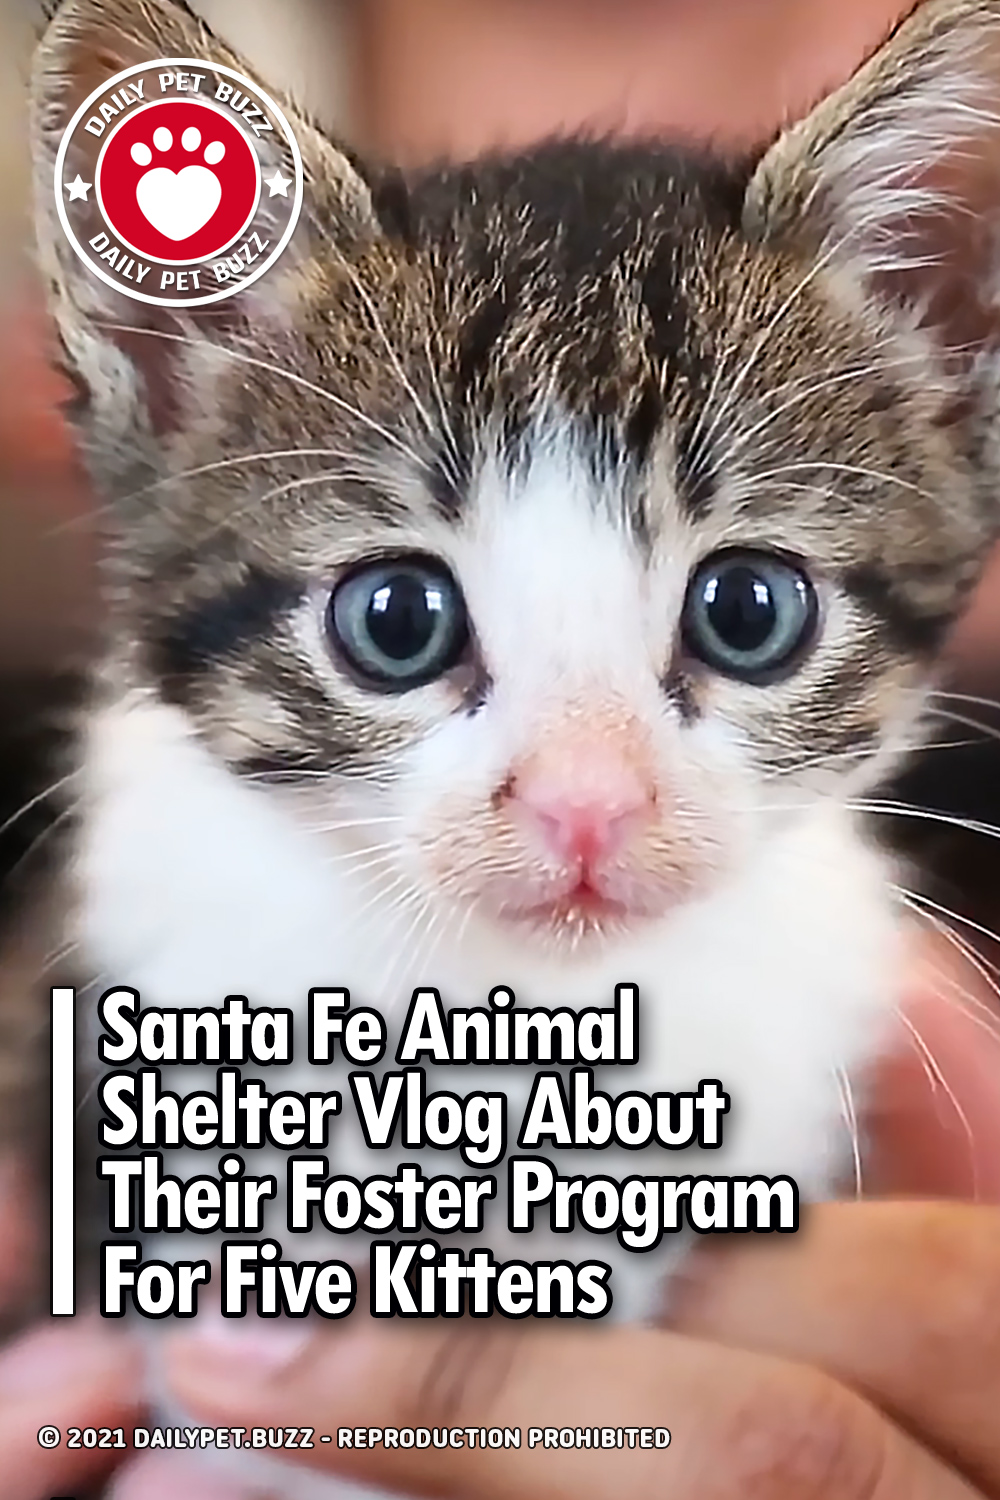 Santa Fe Animal Shelter Vlog About Their Foster Program For Five Kittens